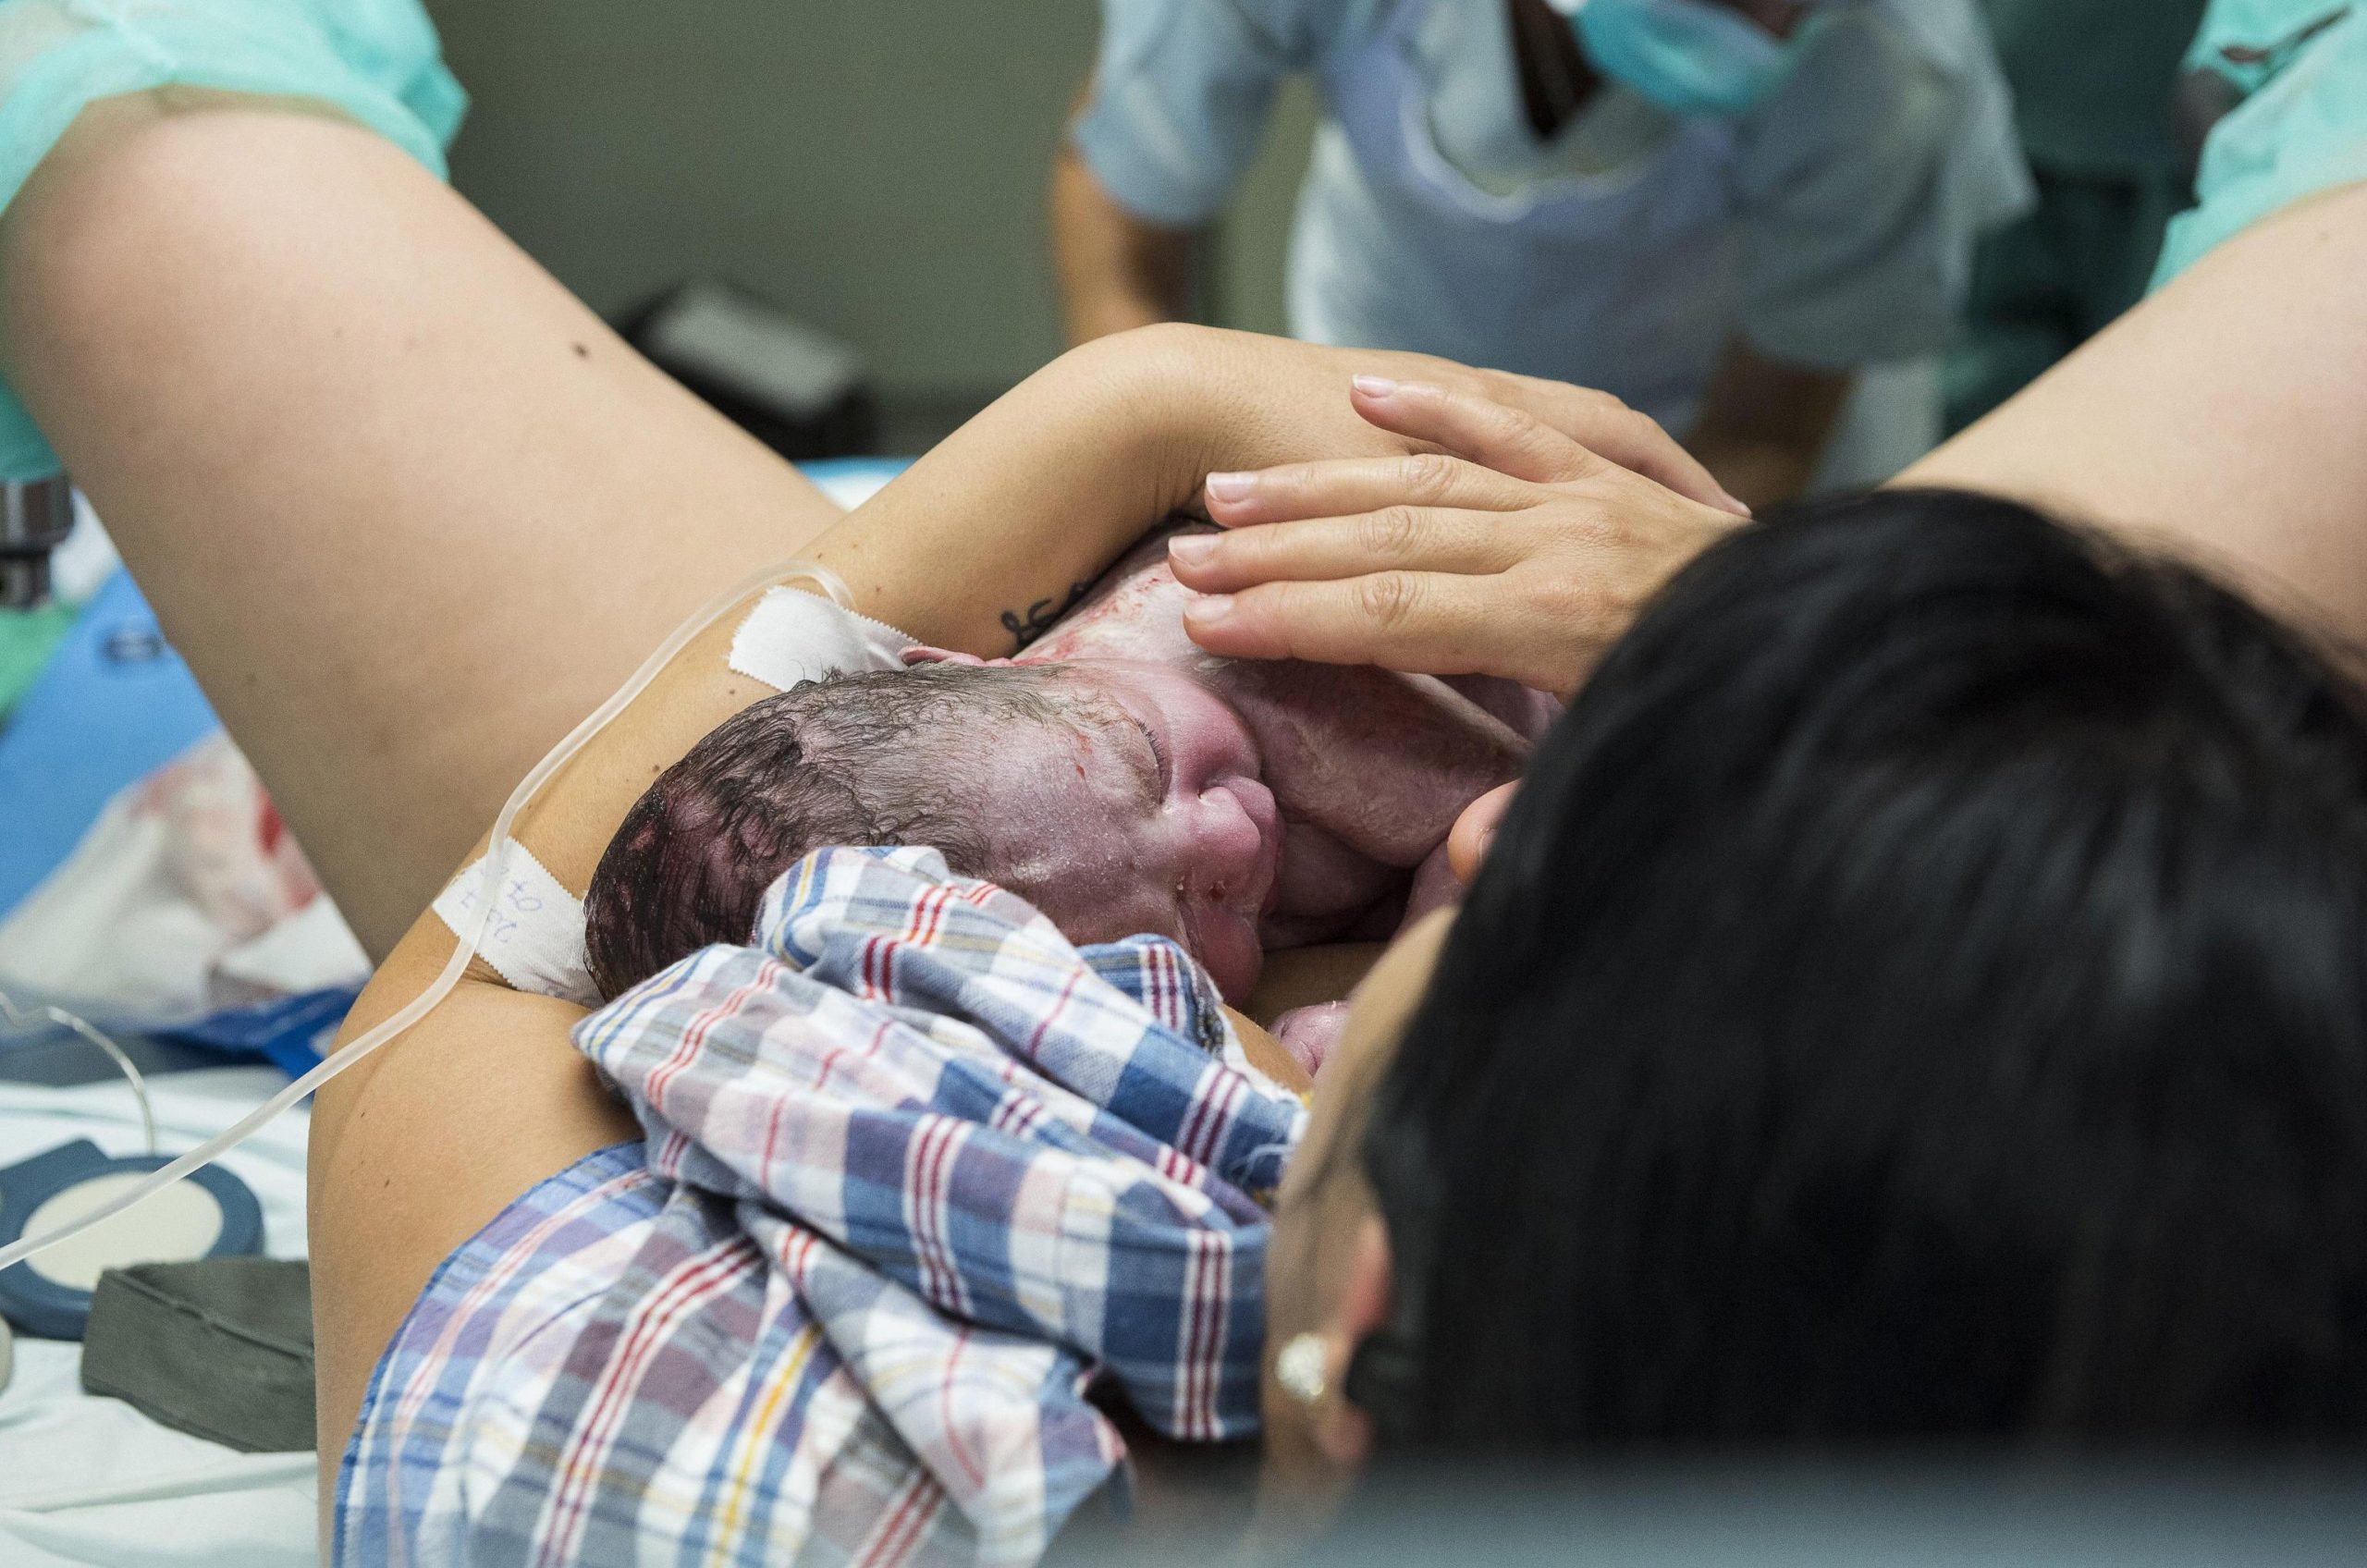 Lotus Birth, mamma rifiuta il taglio del cordone ombelicale: i medici chiamano la procura